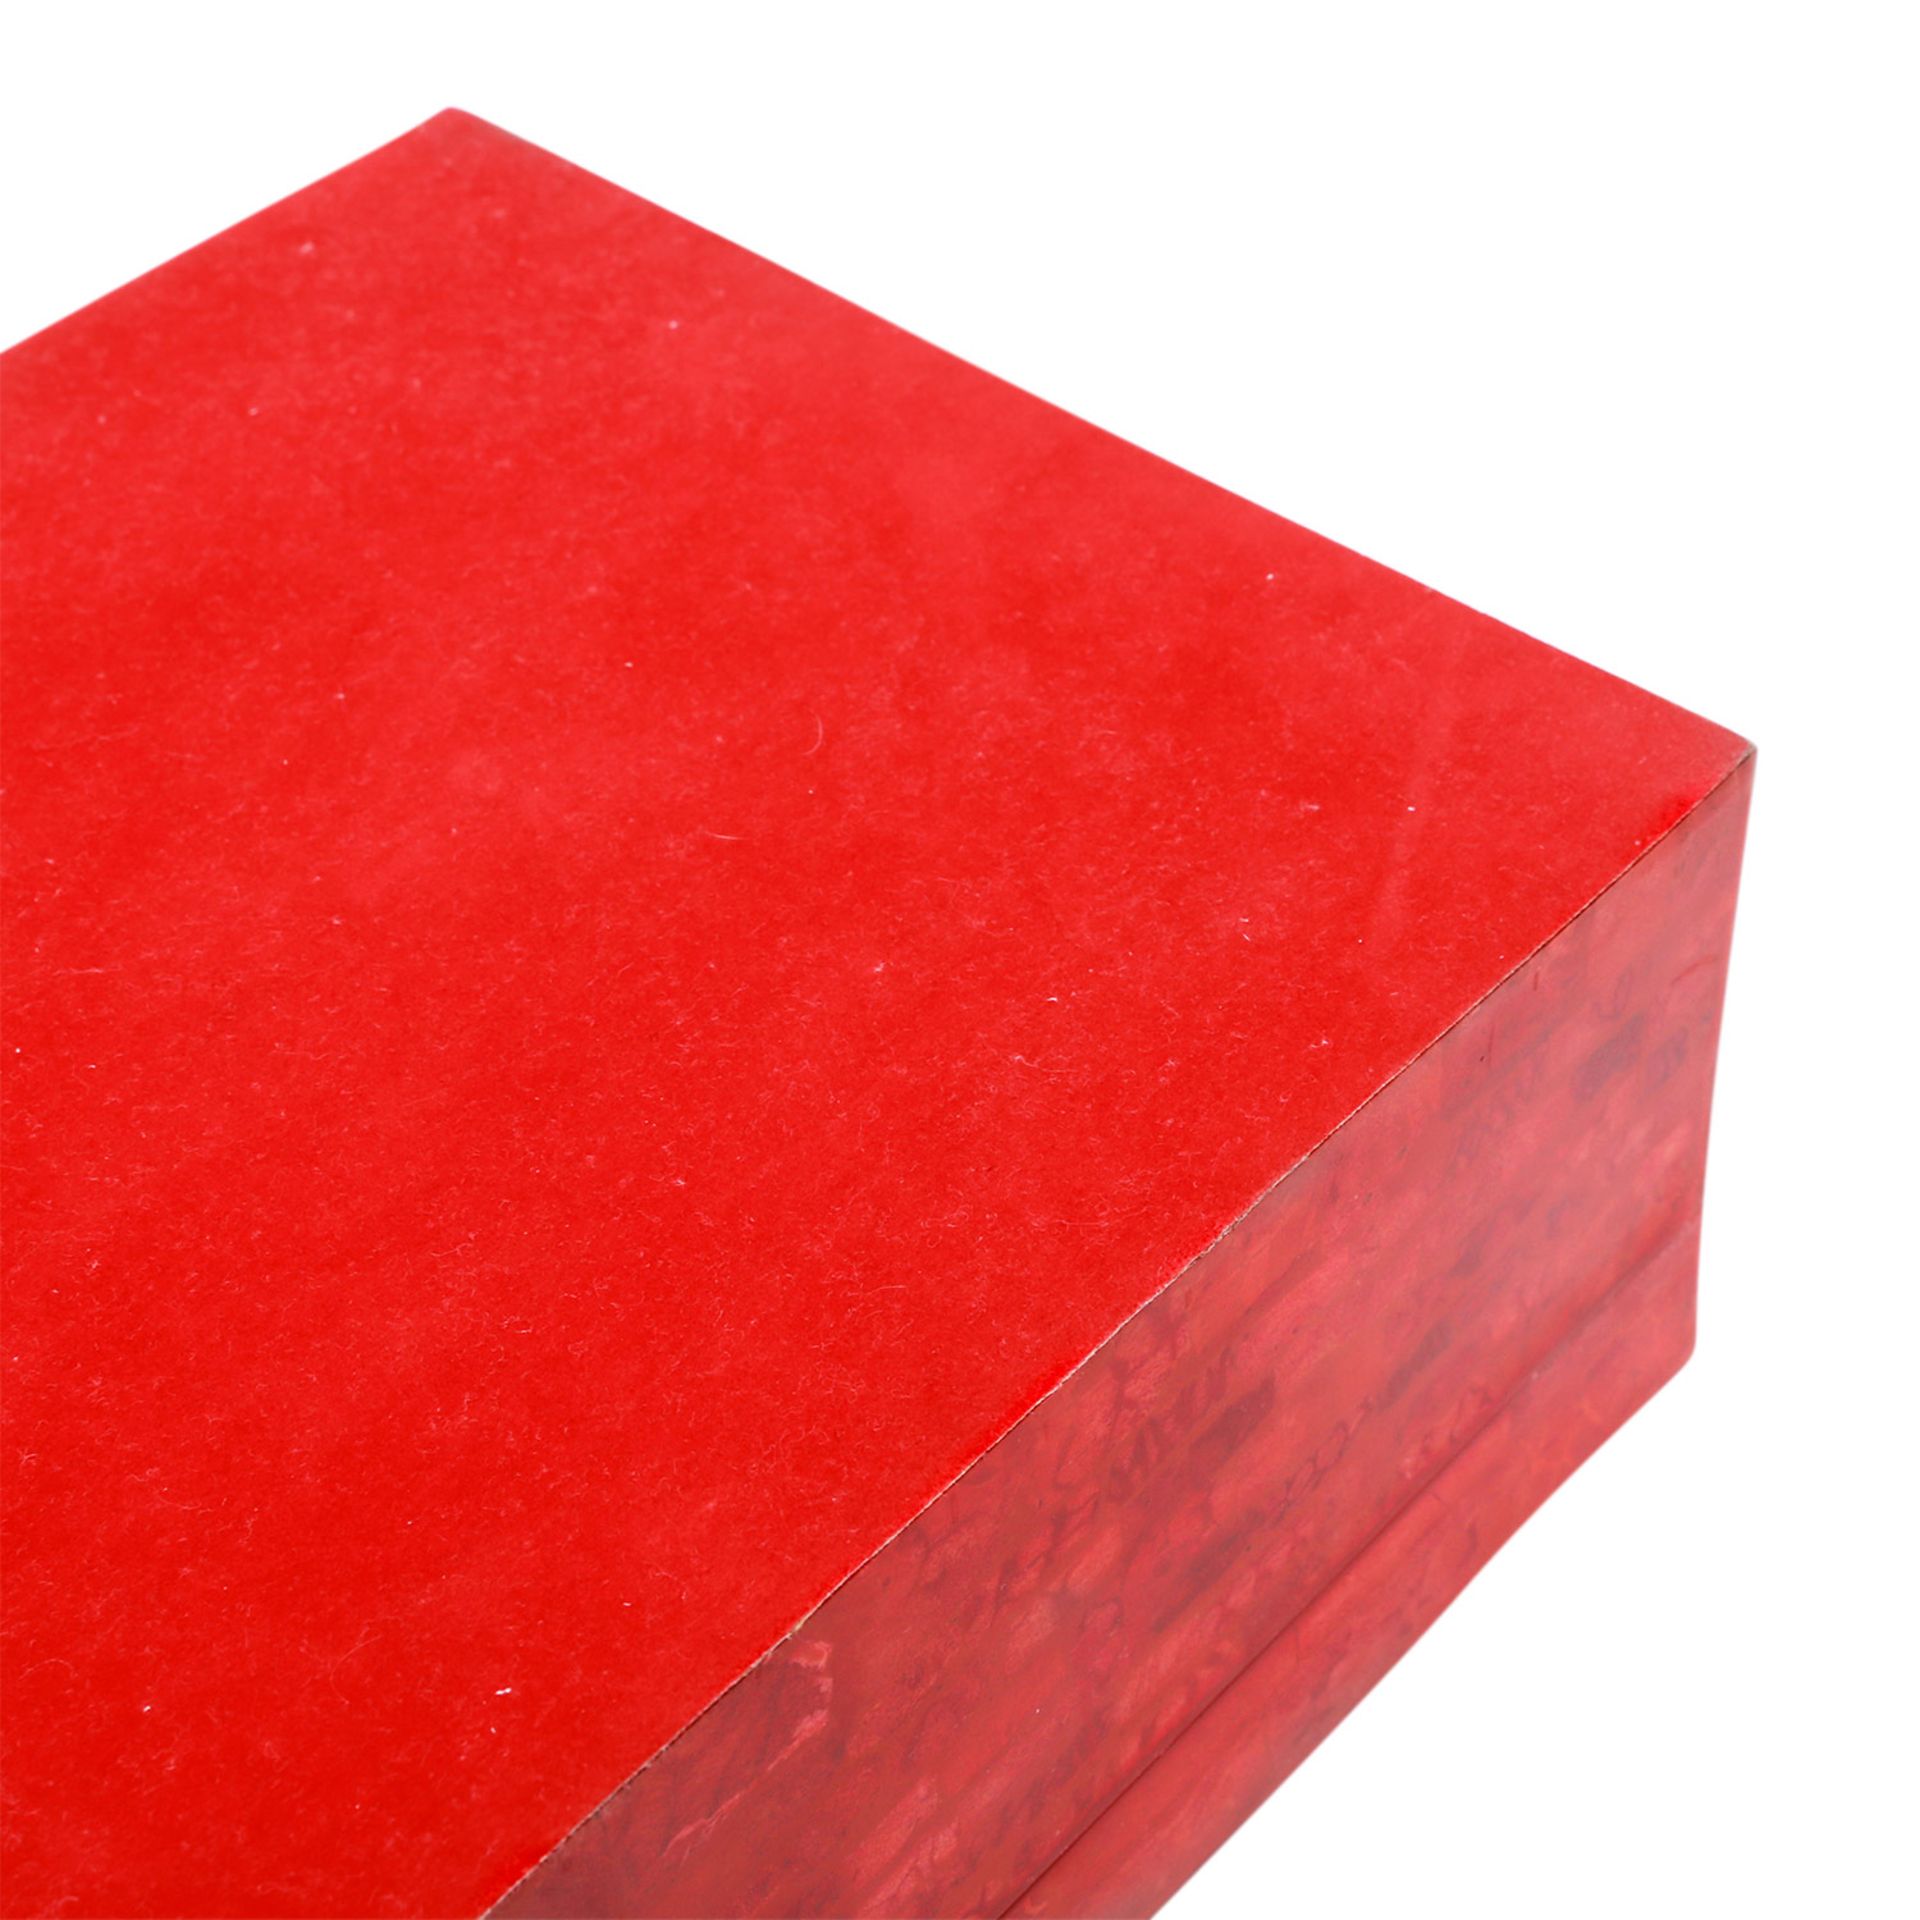 Schmuckkassette. Große Box in Hochglanzlack Rot, marmoriertes Design, rotes Innenfutter, - Bild 6 aus 6